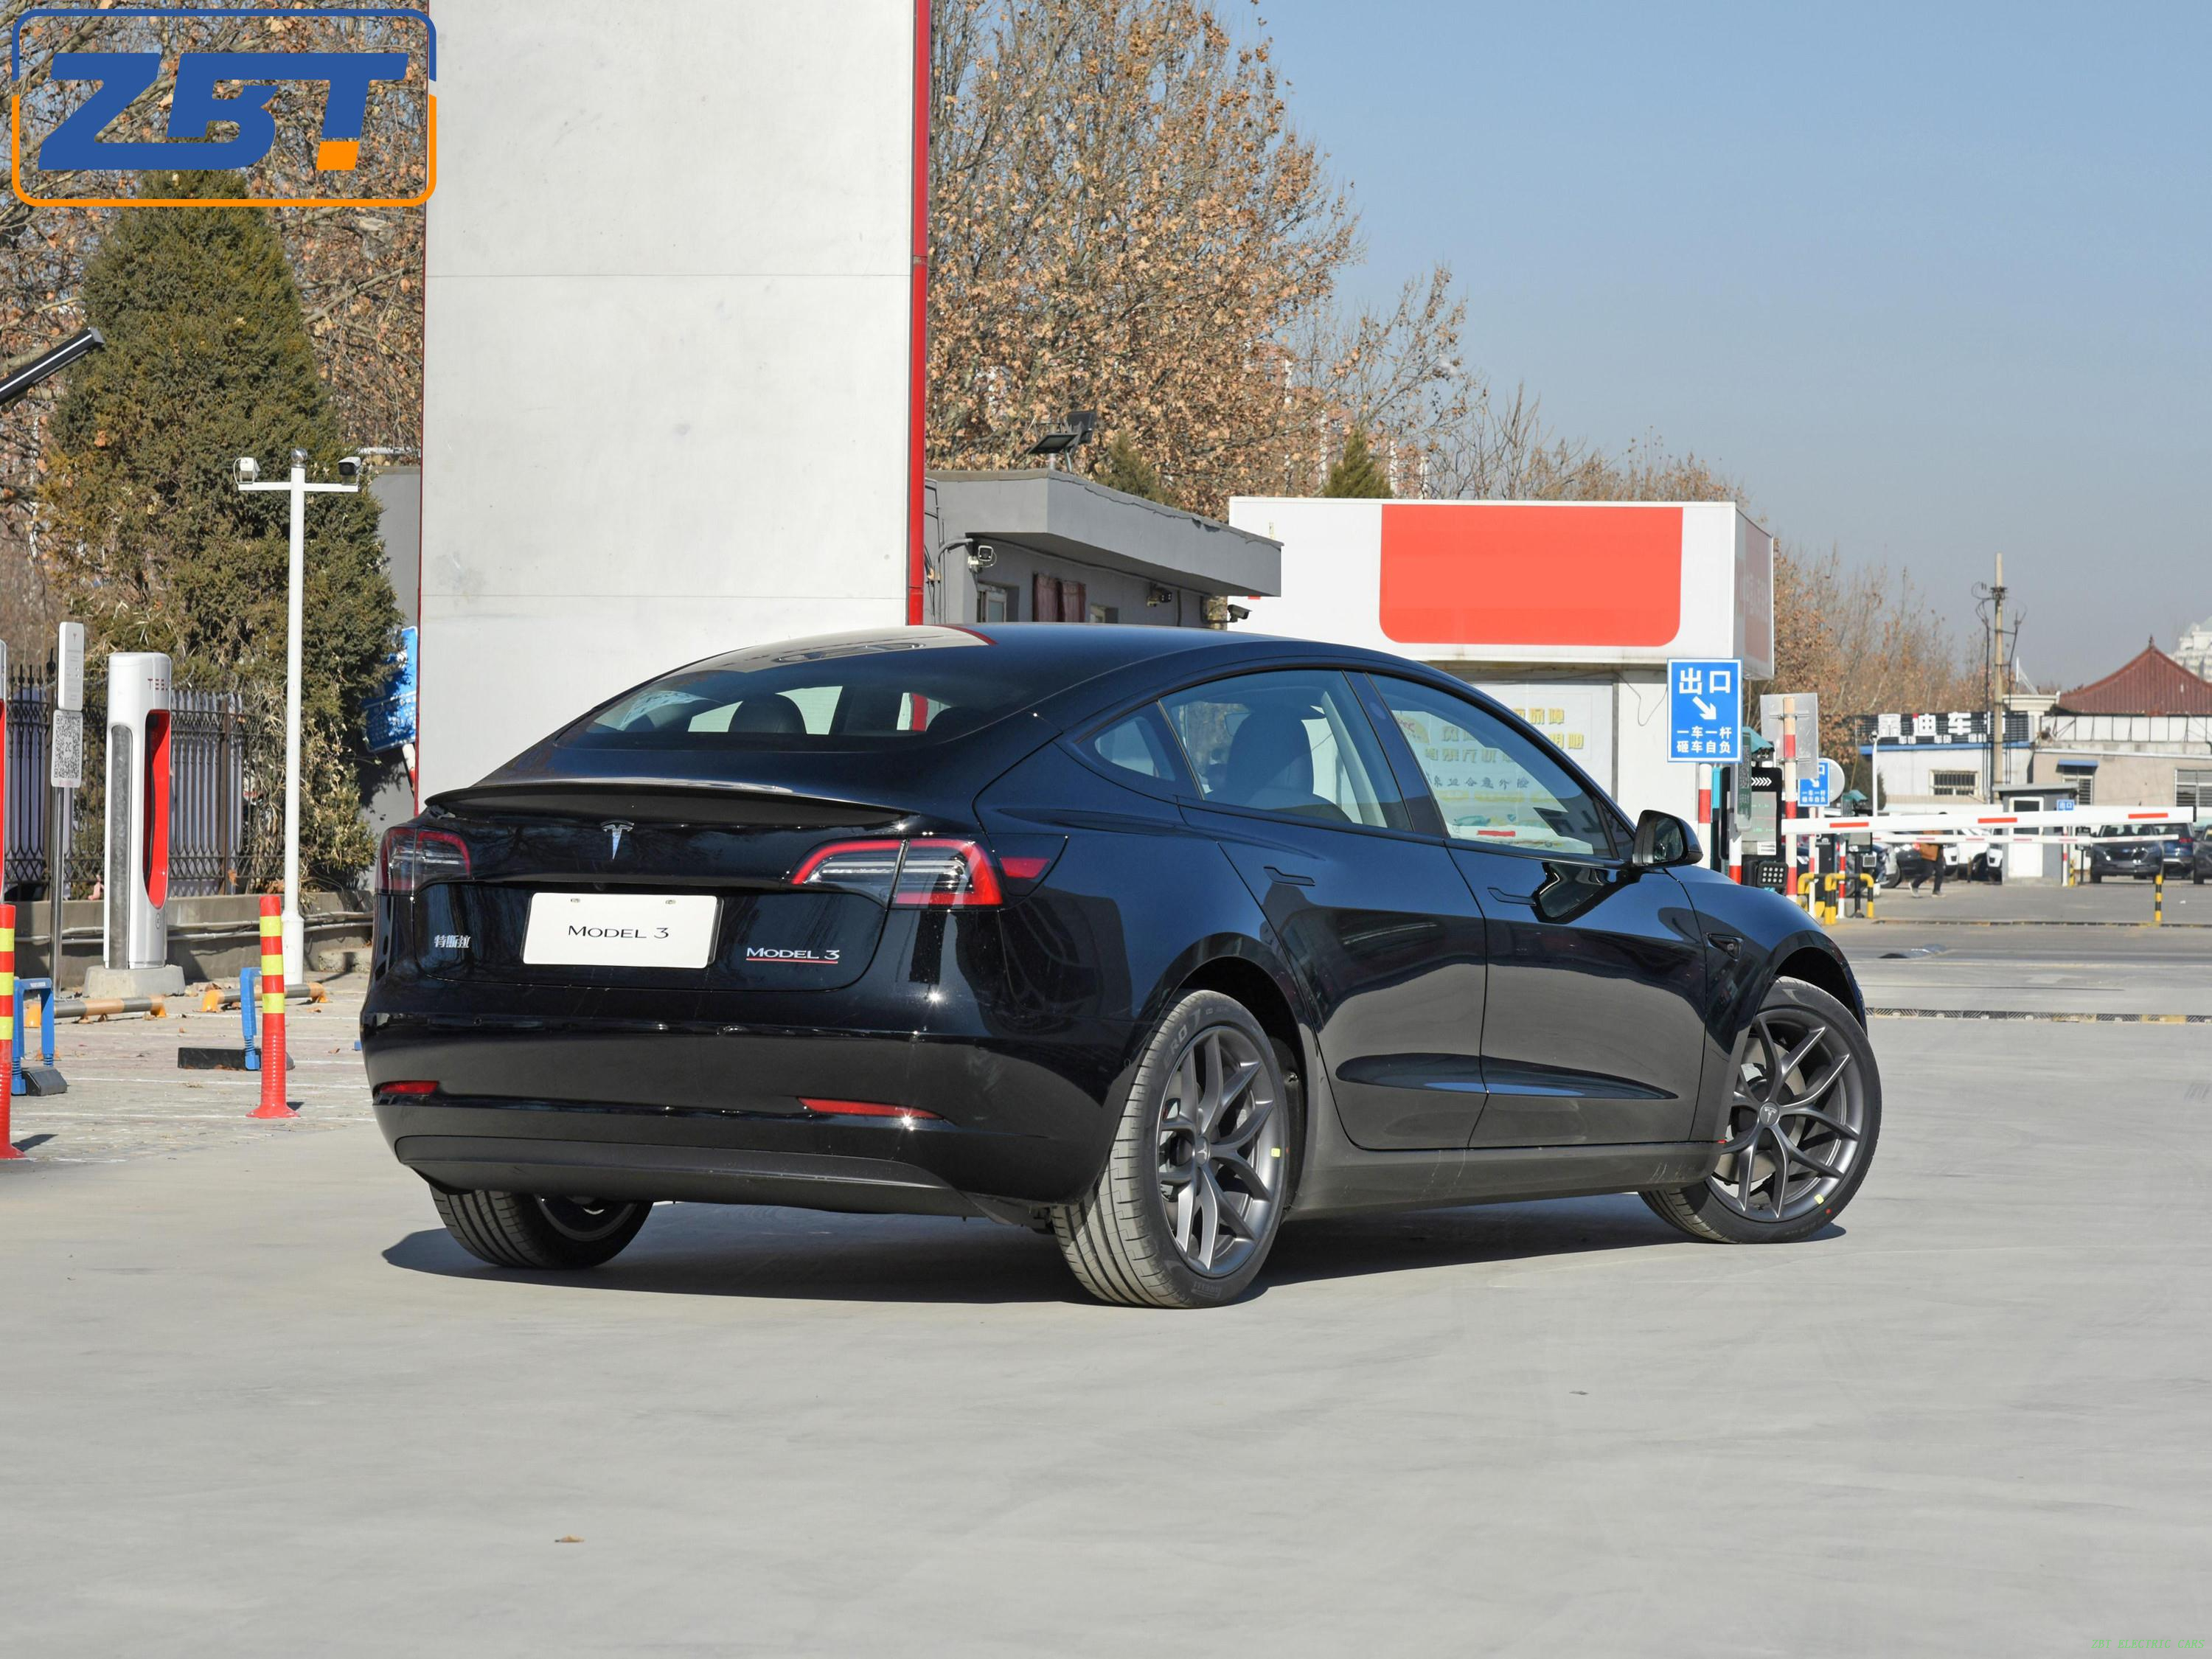 China Green Ev Model 3 Автомобиль Роскошный интеллектуальный седан 4x2 4x4 Super Sport Smart Electric Car